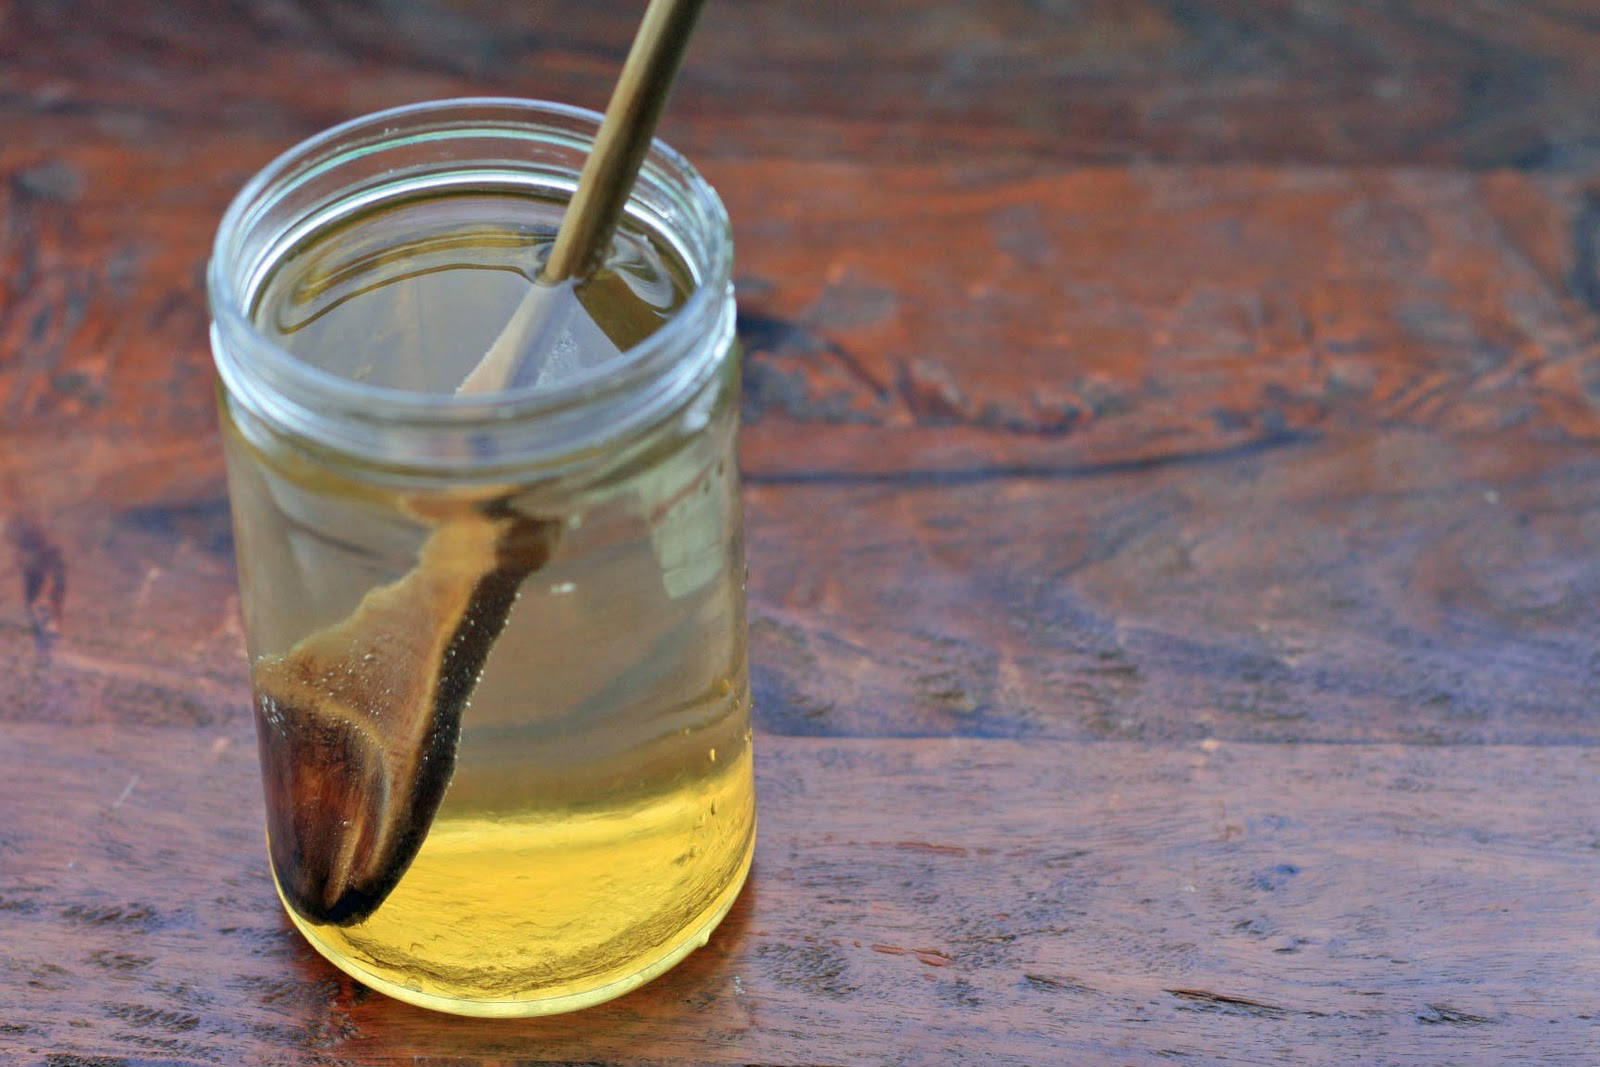 فوائد العسل الحر مع الماء الدافئ